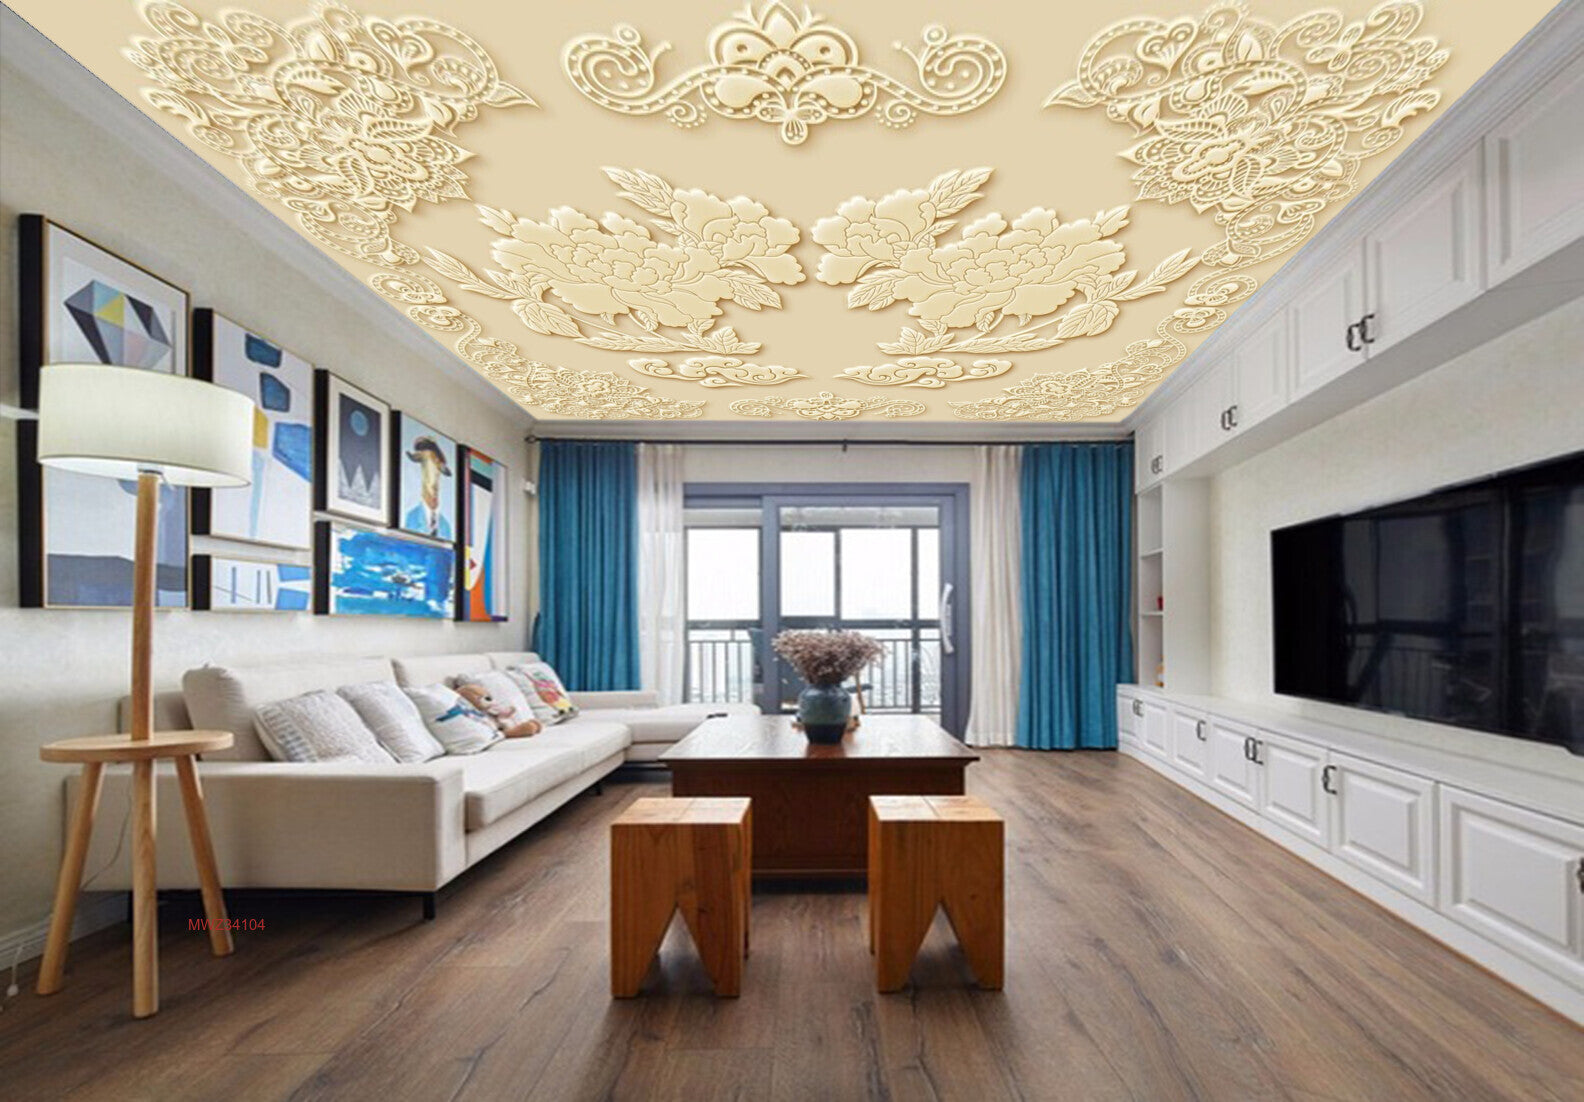 Avikalp MWZ3410 Creamy White Flowers Leaves HD Wallpaper for Ceiling